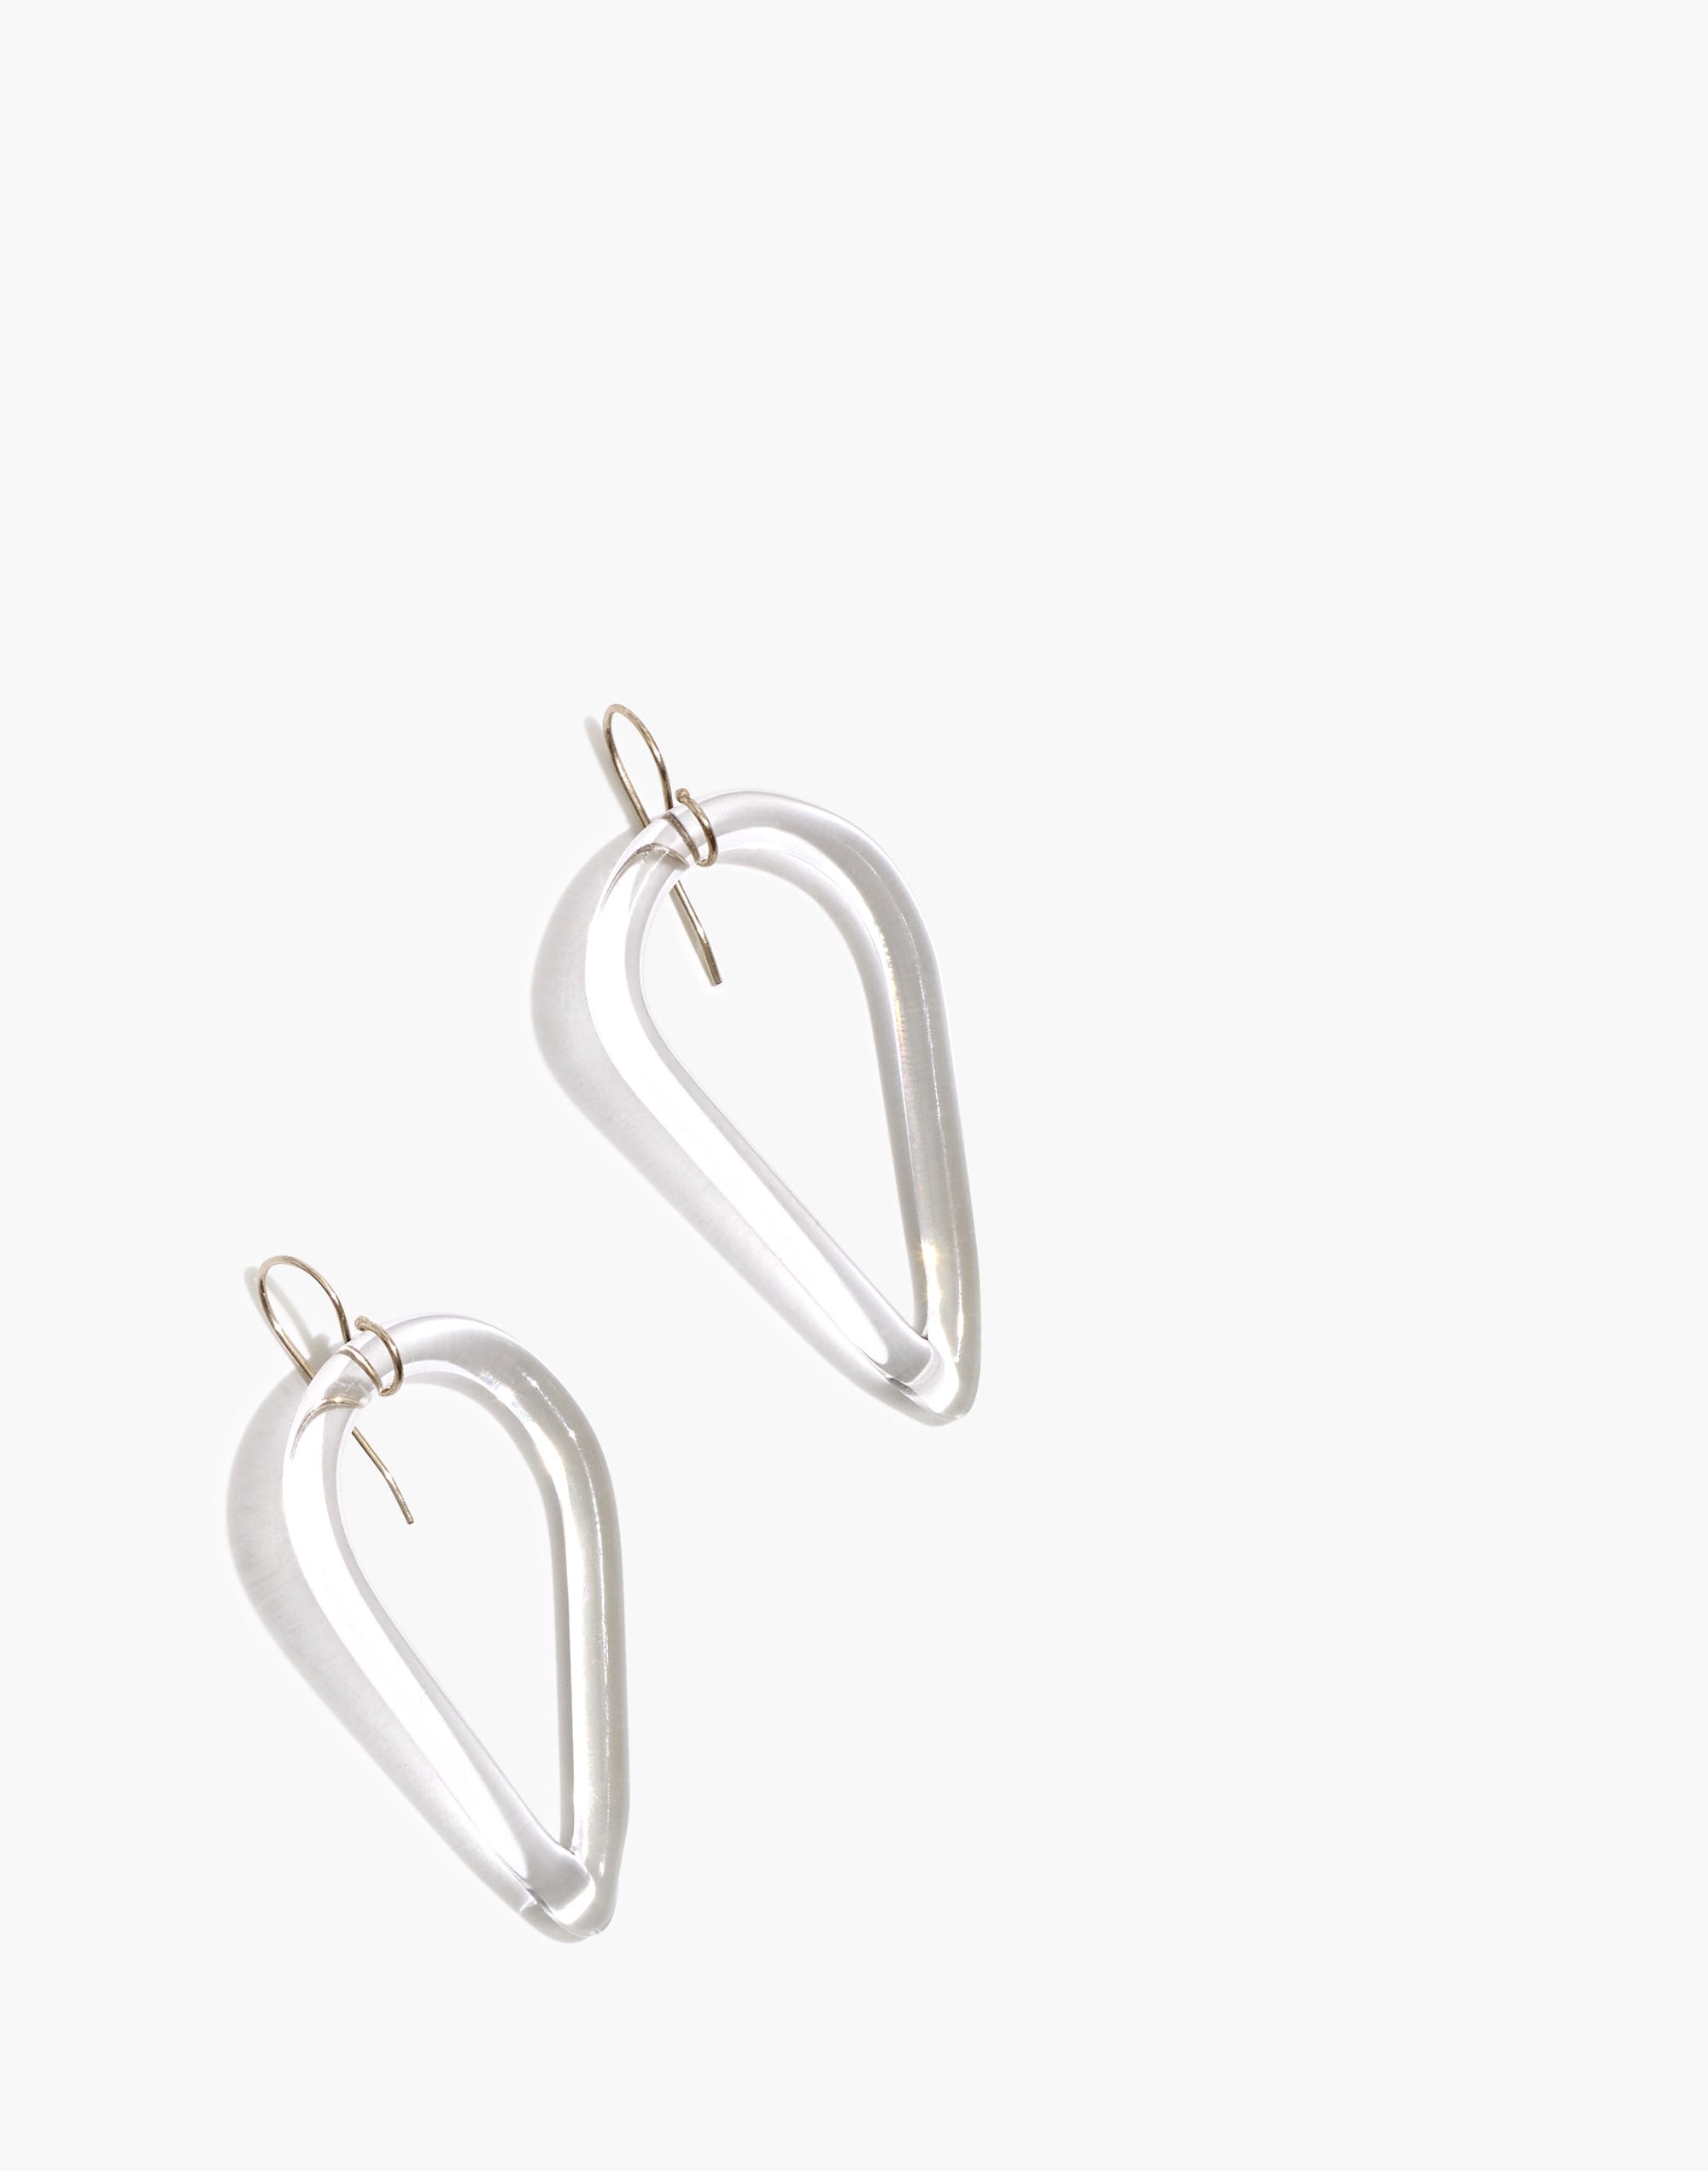 Jane D'Arensbourg Teardrop Clear Glass Earrings